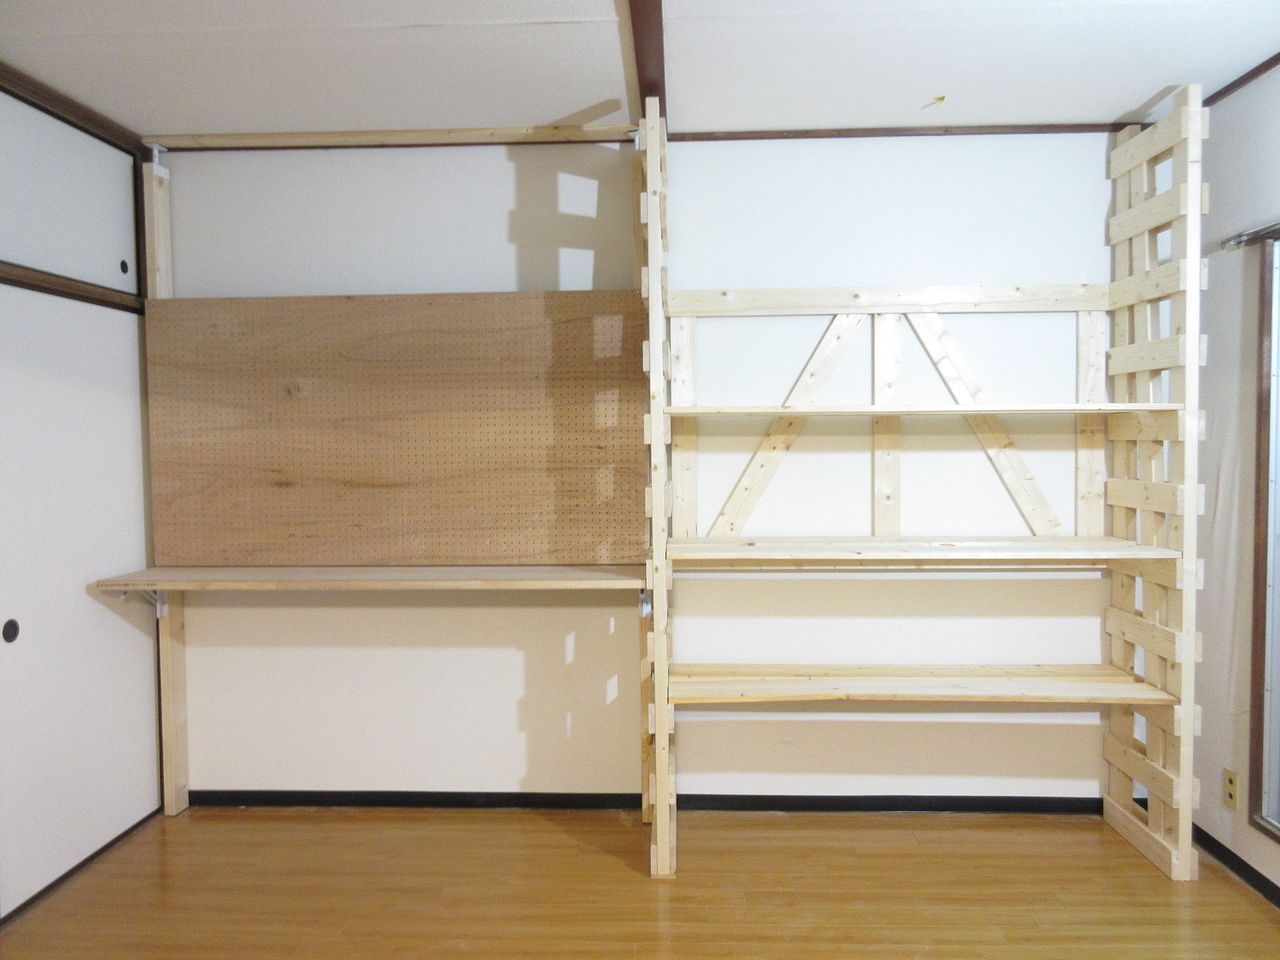 これで二つの収納棚の完成です。
できあがってみるとかなり存在感のある収納棚ができました。
やはり木材の素材感が良い感じです。
これだけの収納があると新たに道具も欲しくなってしまいました。